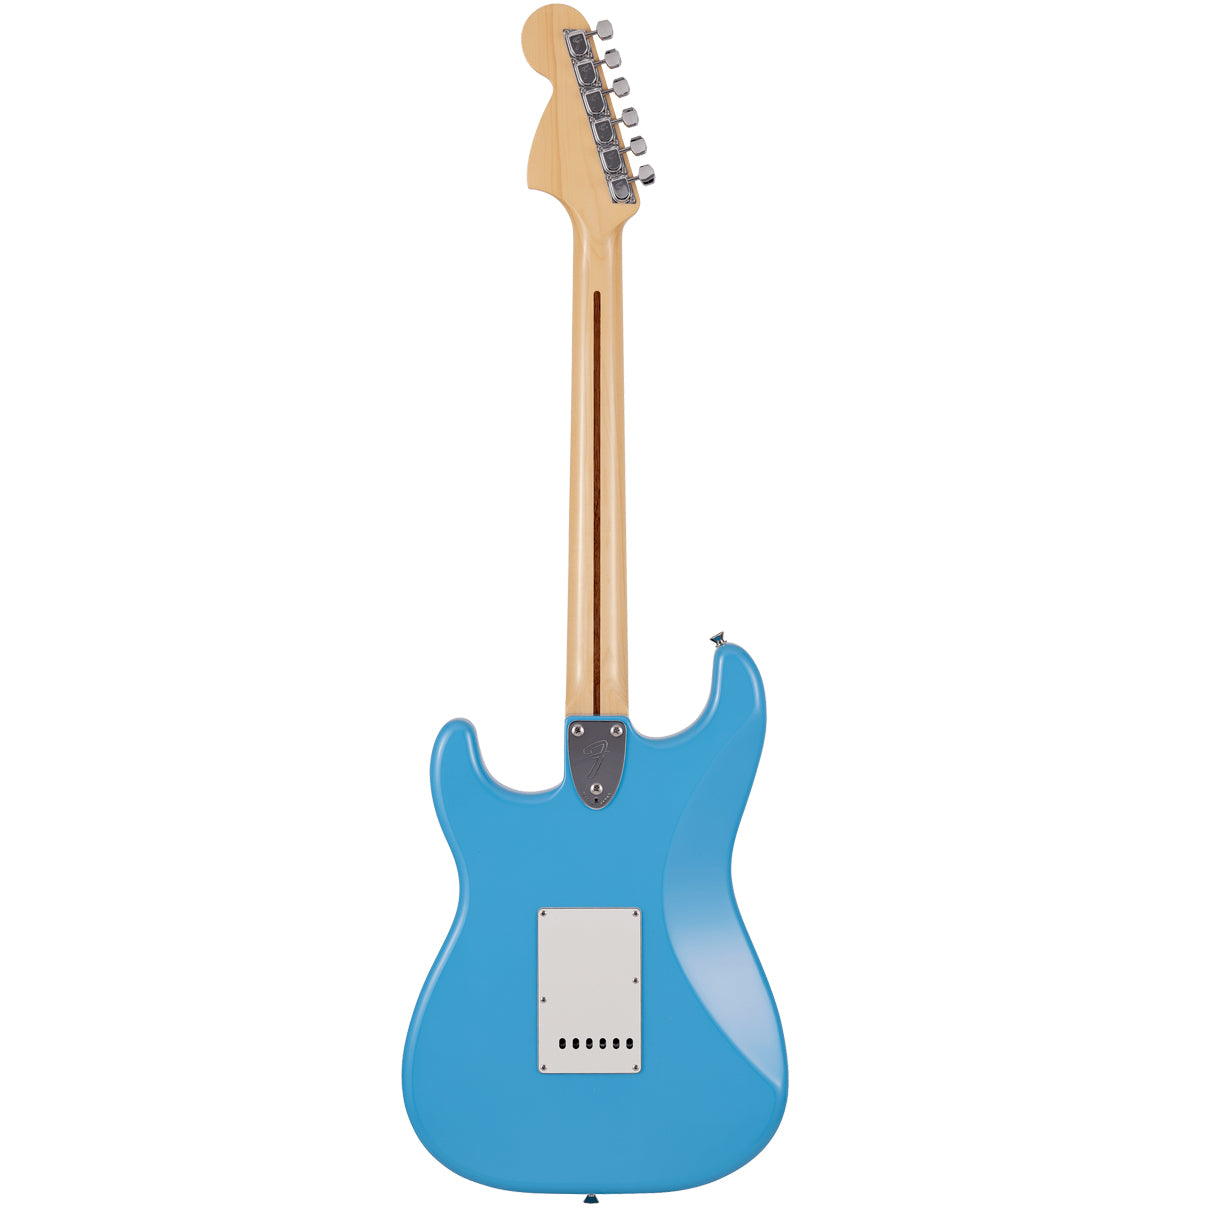 Fender Made in Japan Limited International Color Stratocaster Maple  Fingerboard Maui Blue w/Bag